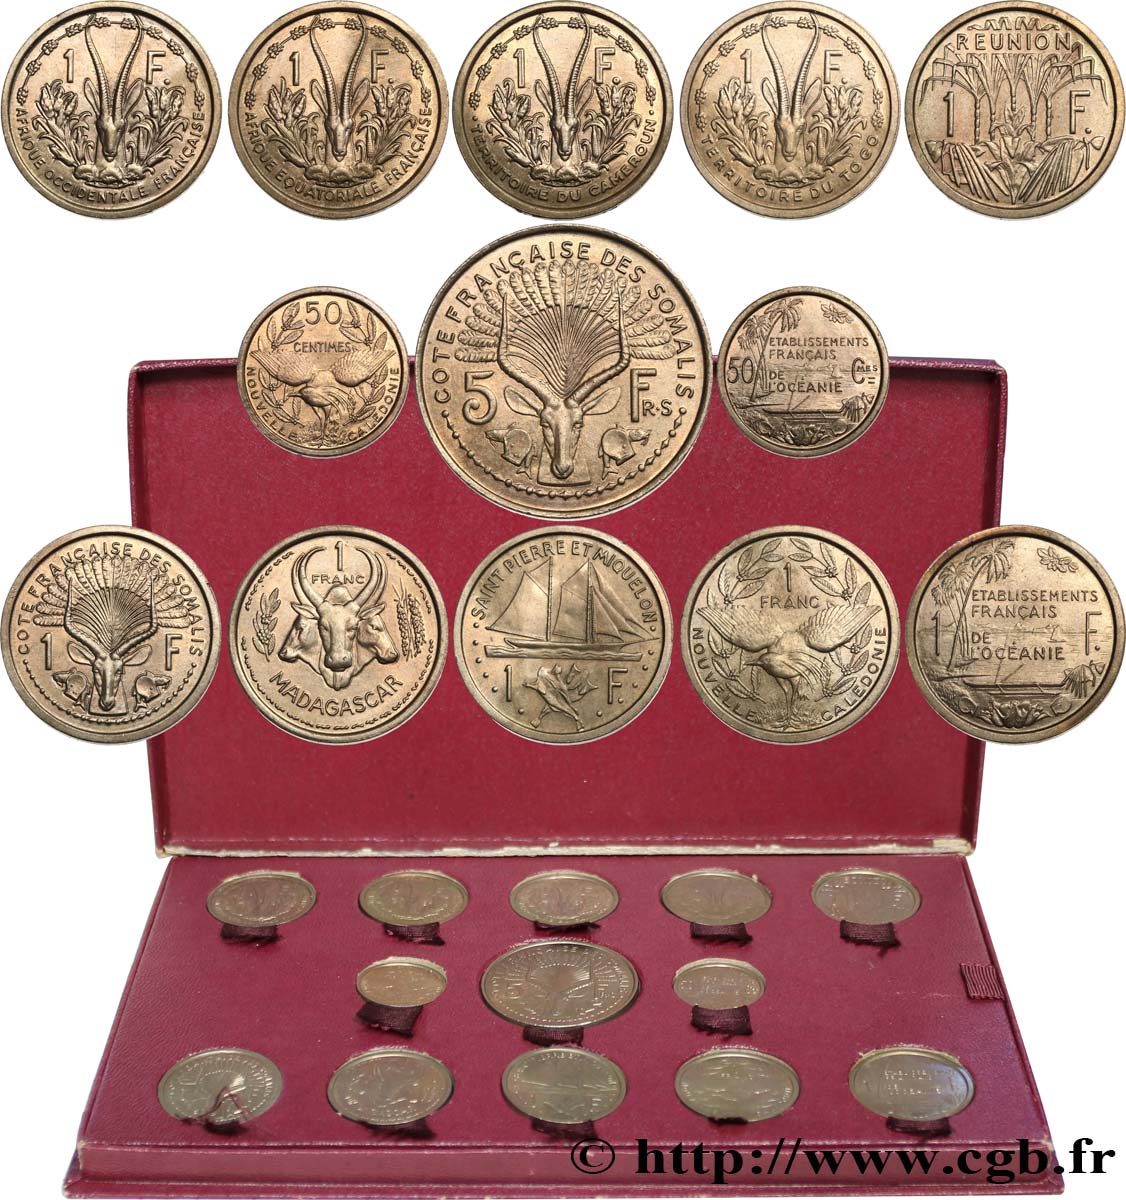 FRENCH UNION - FOURTH REPUBLIC Coffret de 23 essais Union Française pour les colonies en bronze-nickel 1948-1949 Paris MS 